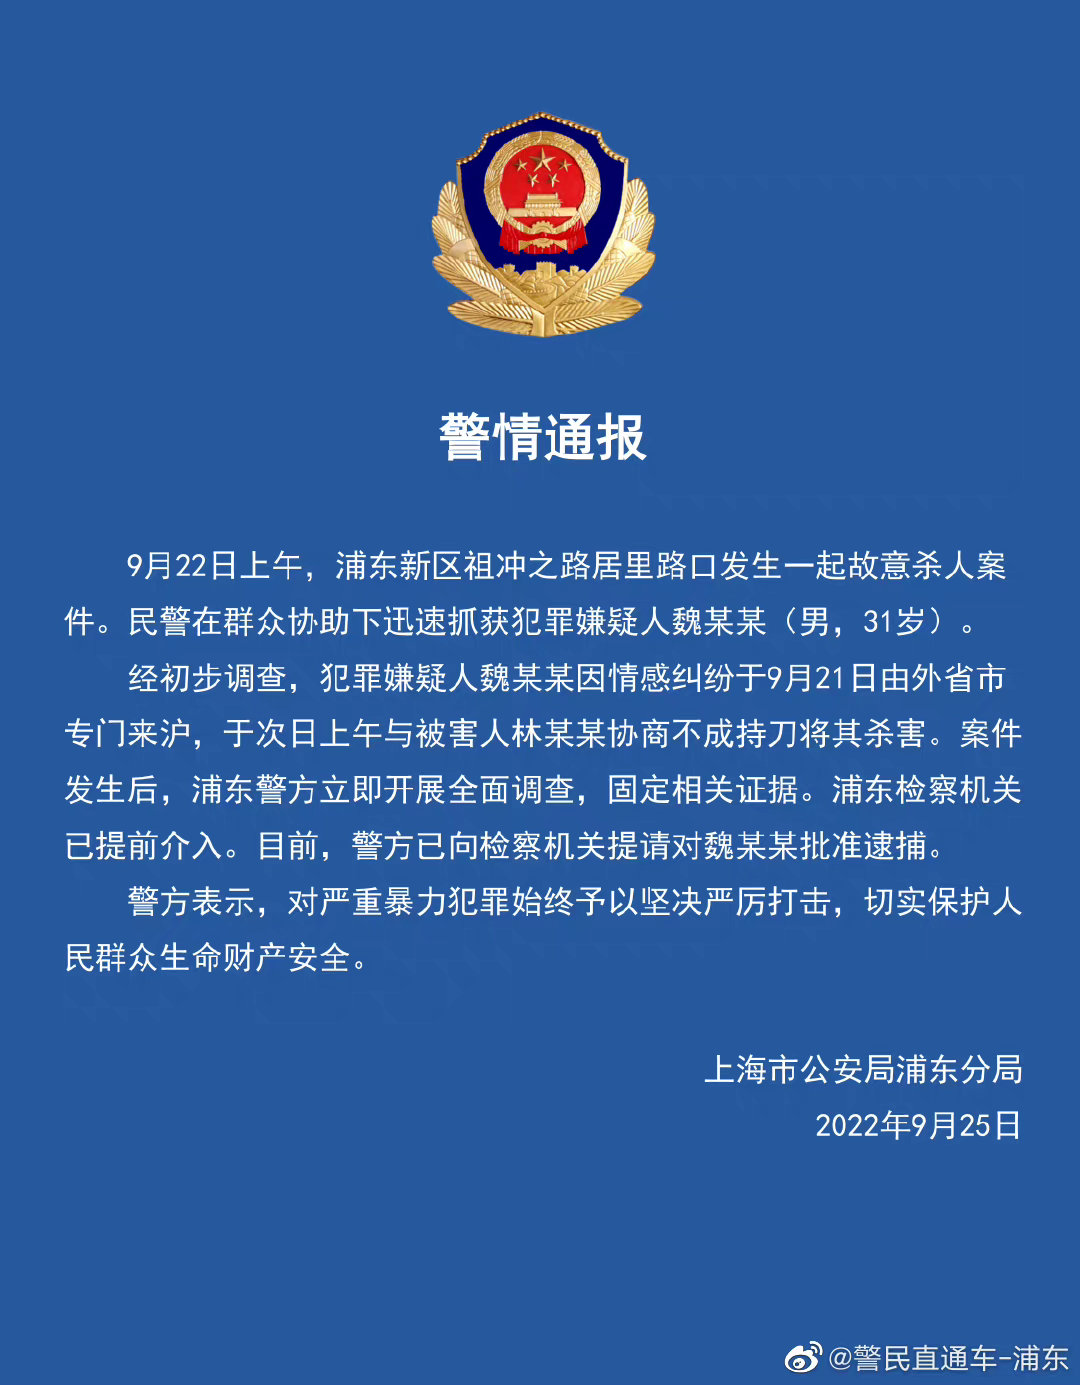 上海警方通报浦东新区发生一起故意杀人案，犯罪嫌疑人已被抓获，具体情况如何？他将承担哪些法律责任？